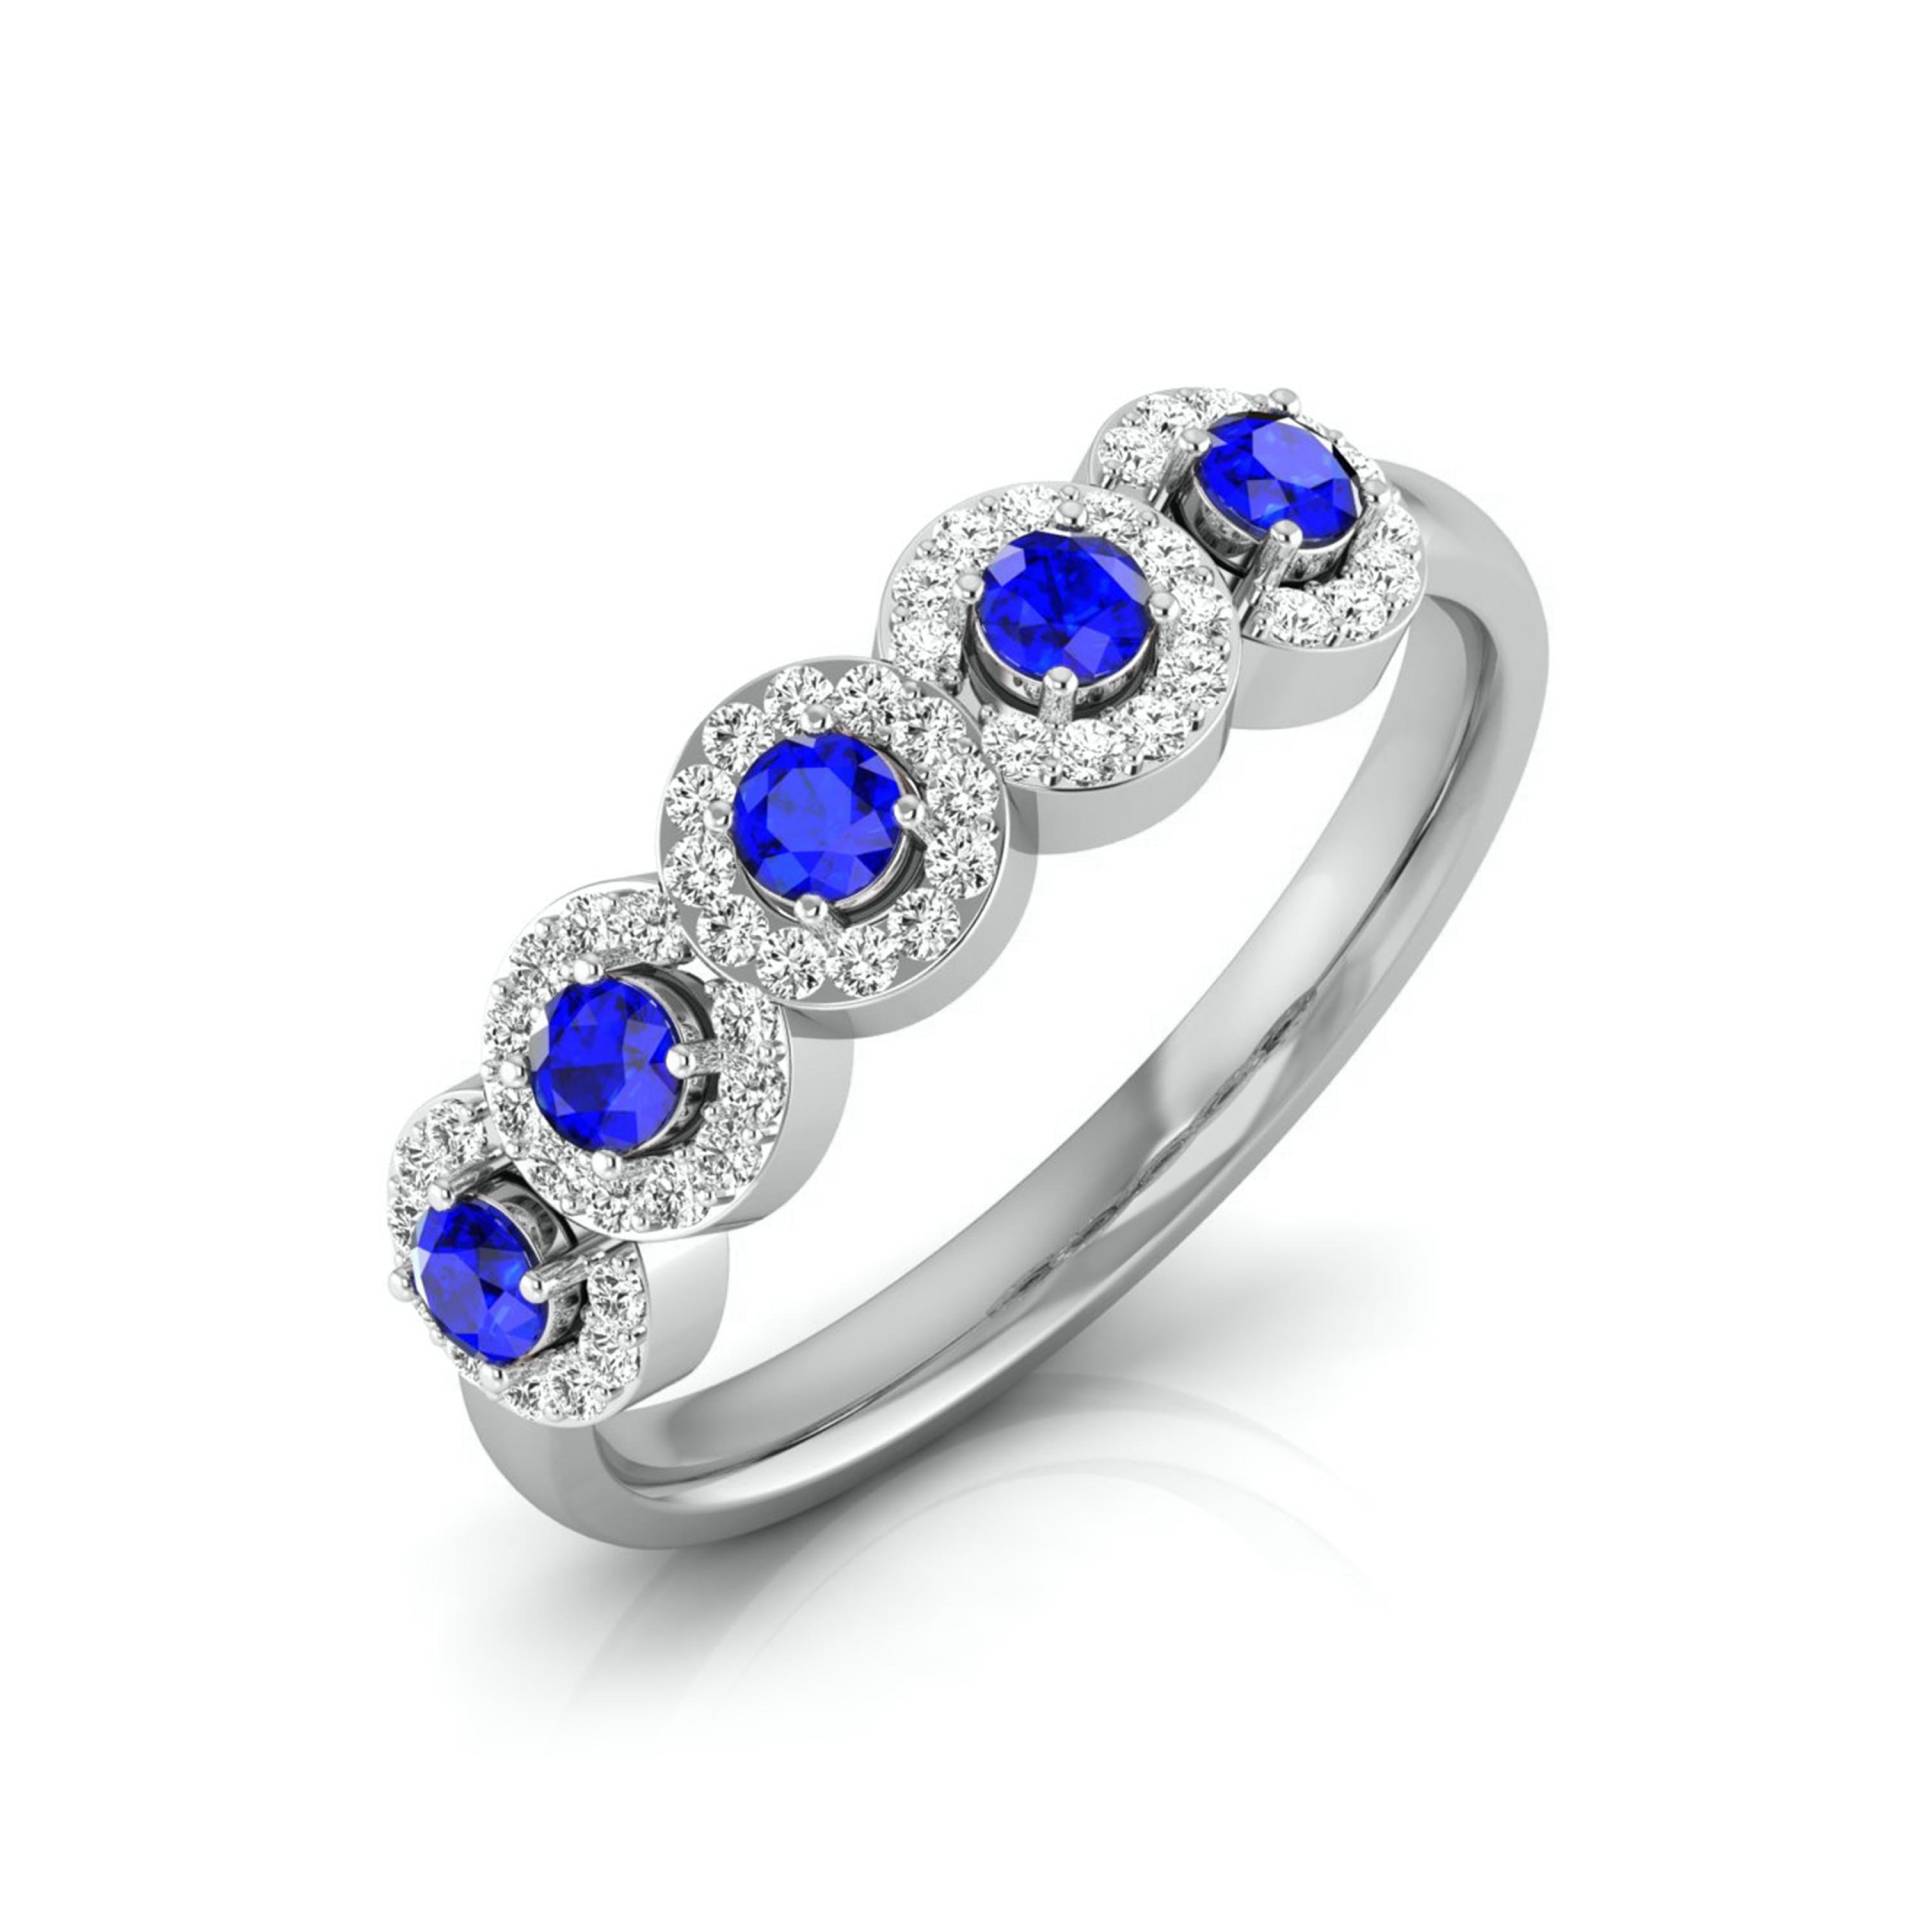 5-stein Blauer Saphir Verlobungsring in Platin Mit Diamant Halo Jl Pt Lr 7038 von Jewelove